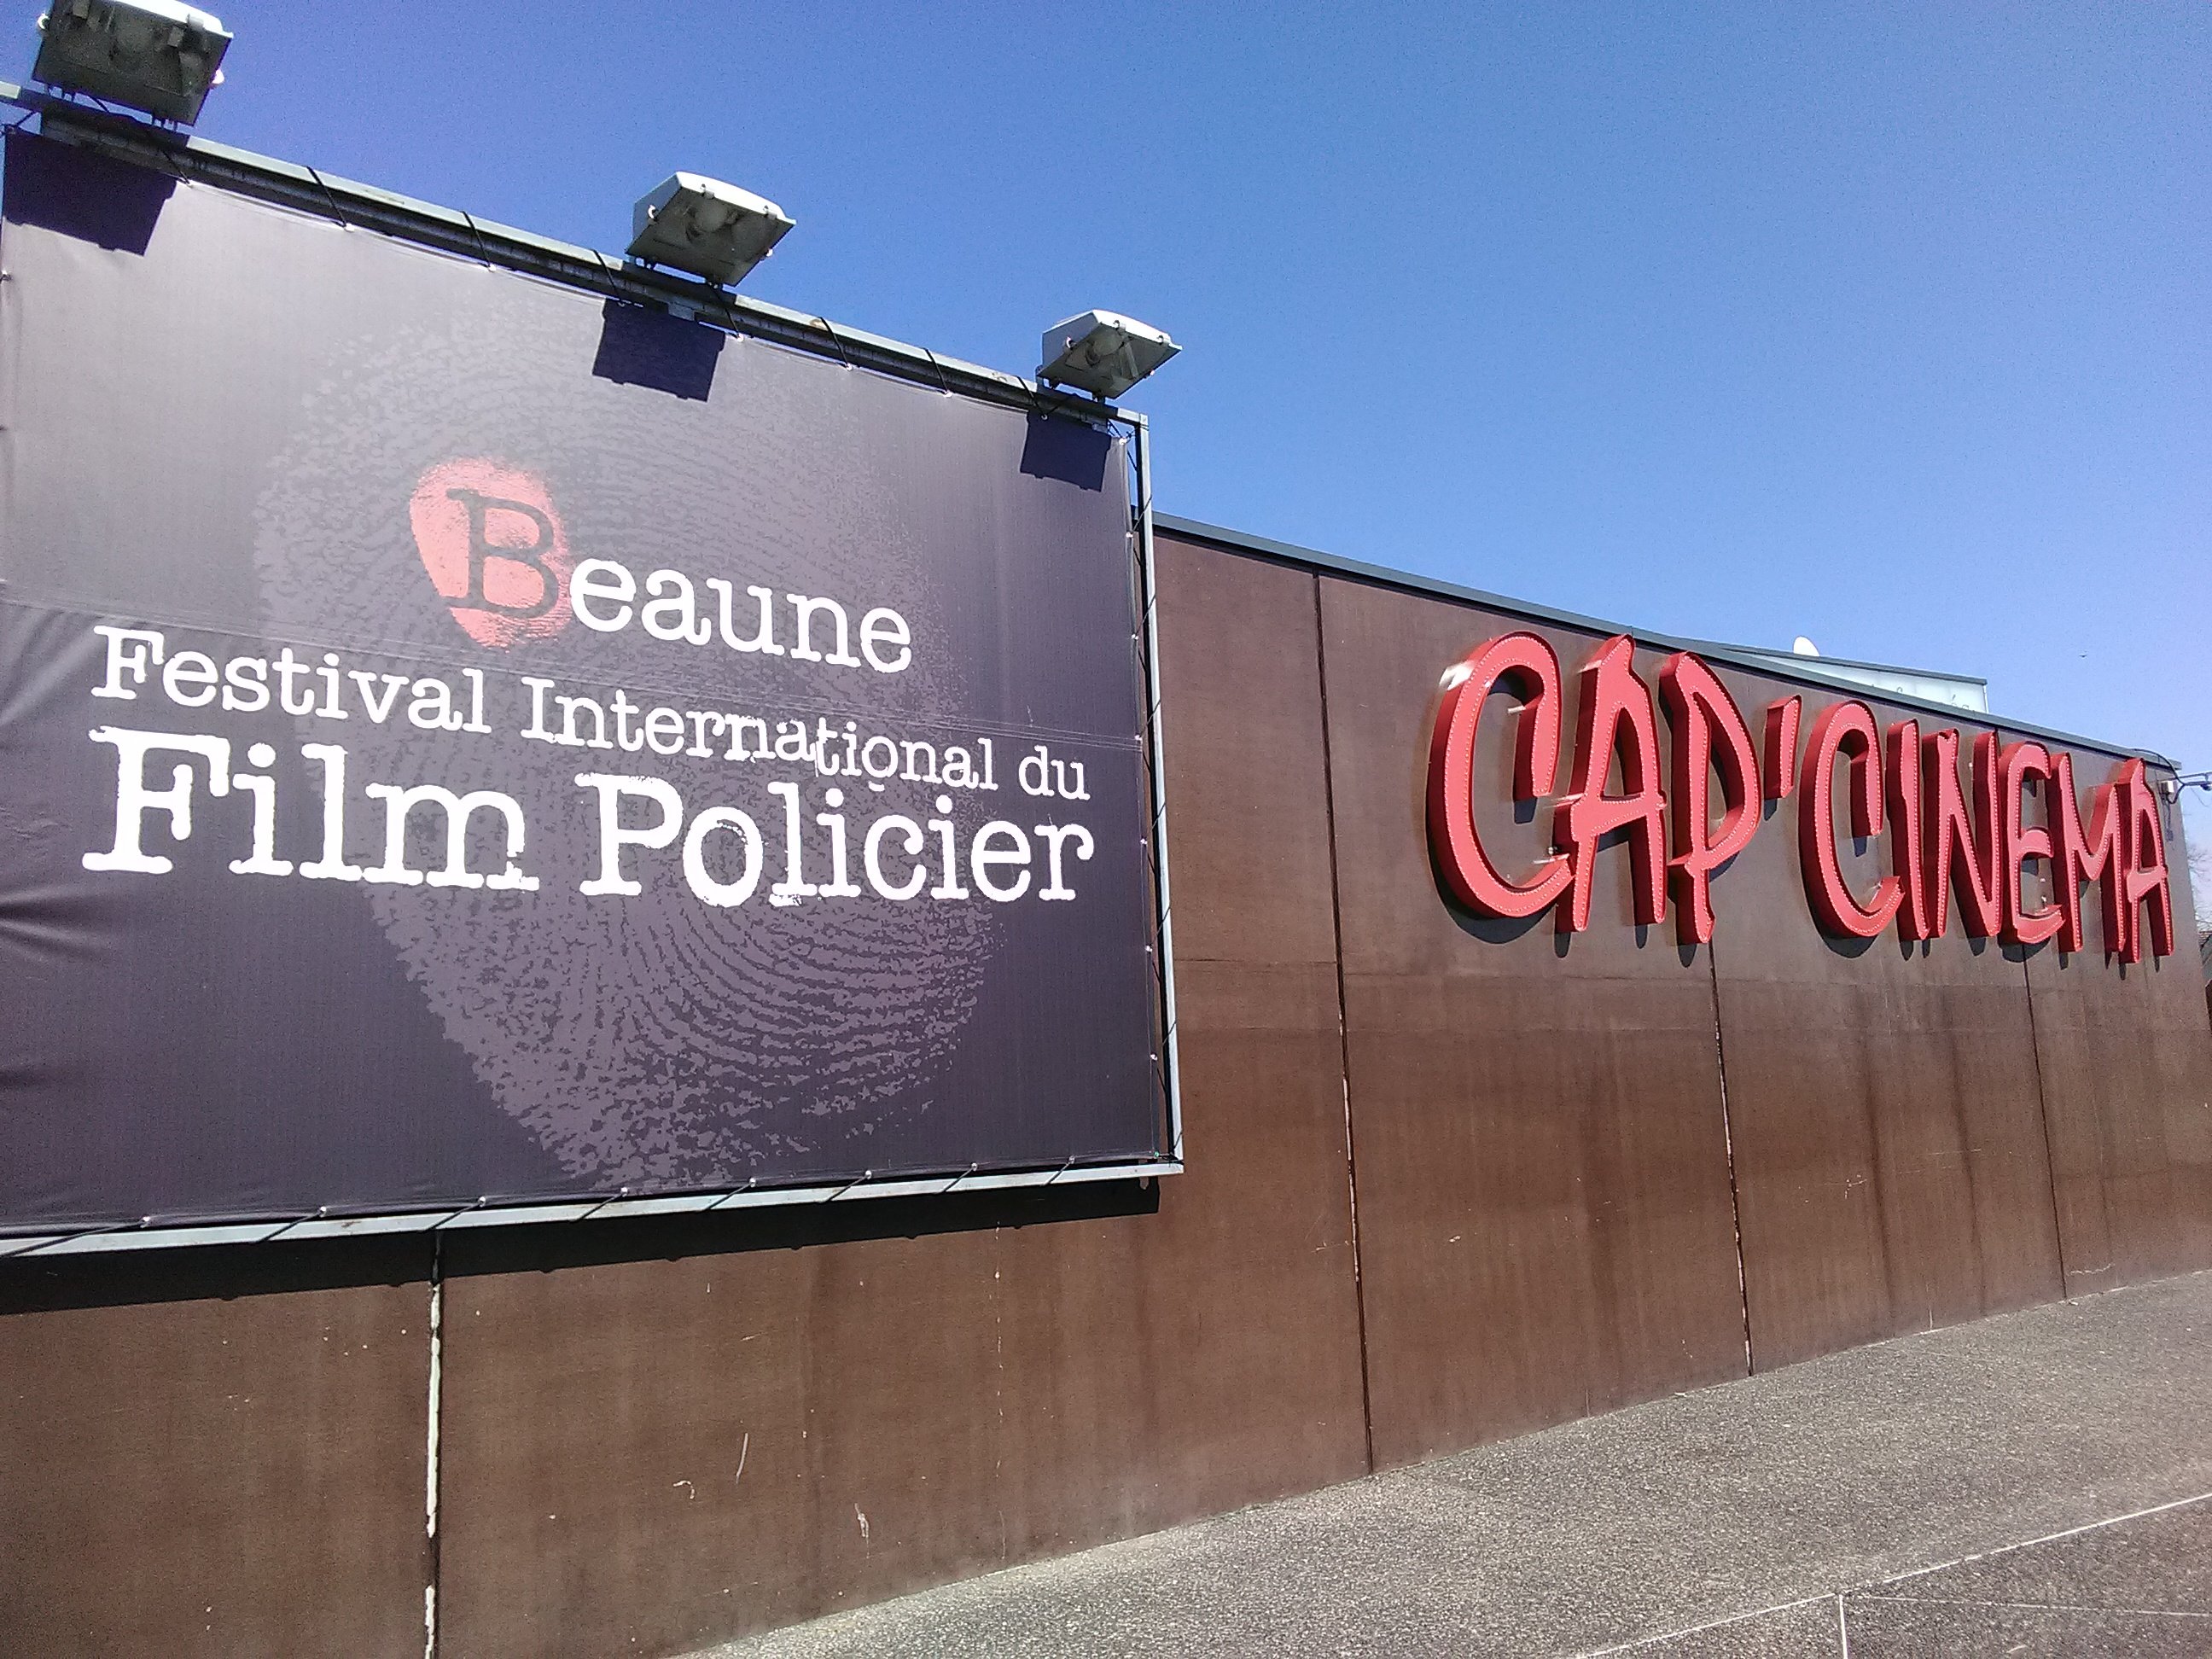 Beaune 2018 : Immersion de deux jours et temps forts du festival du film policier